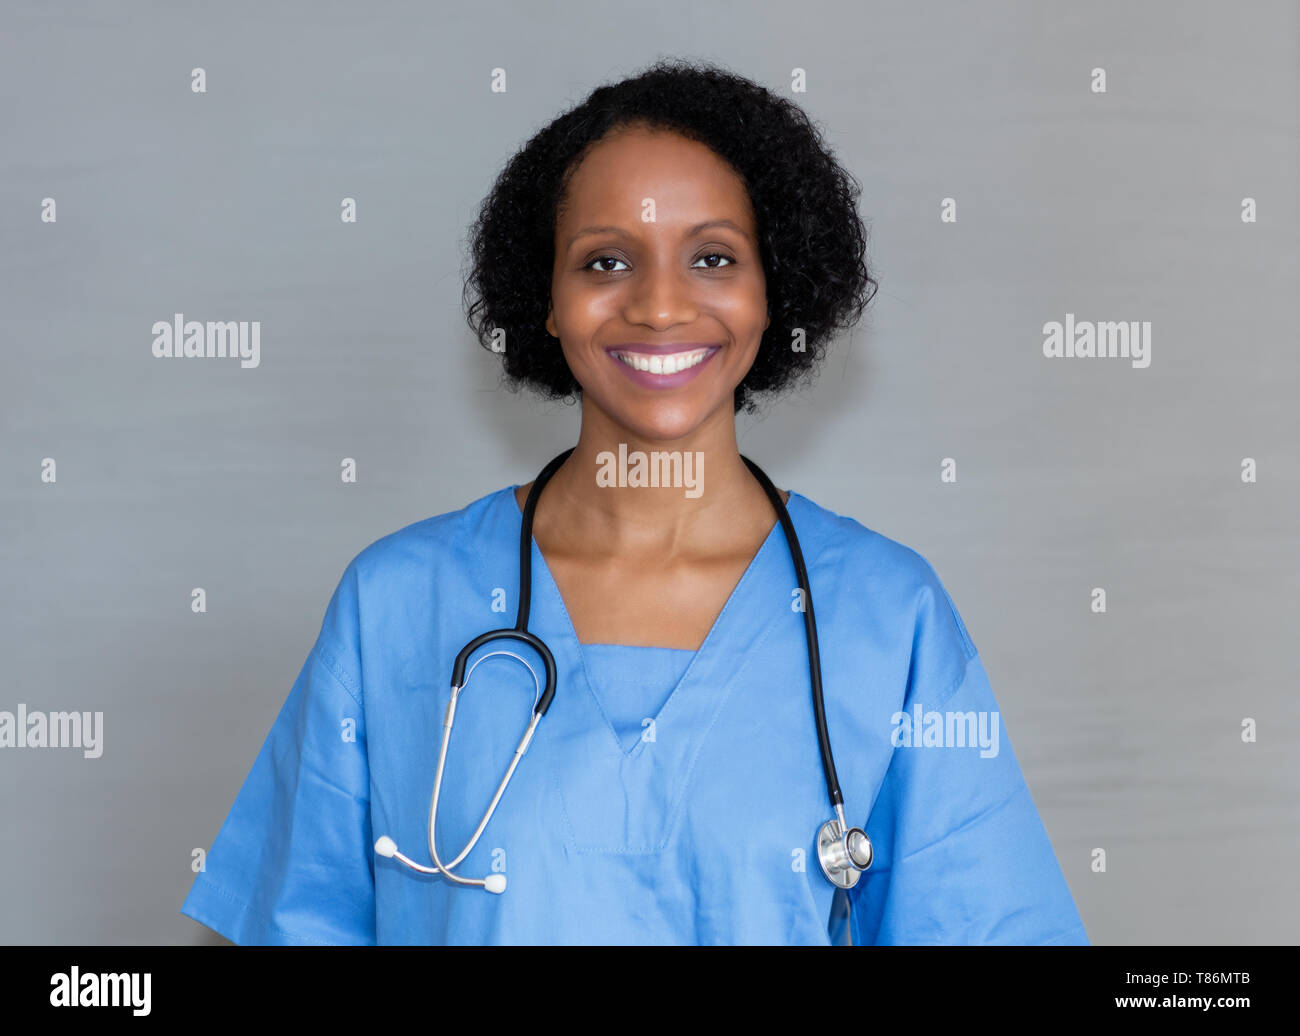 Ritratto di ridere african american infermiere su sfondo grigio Foto Stock